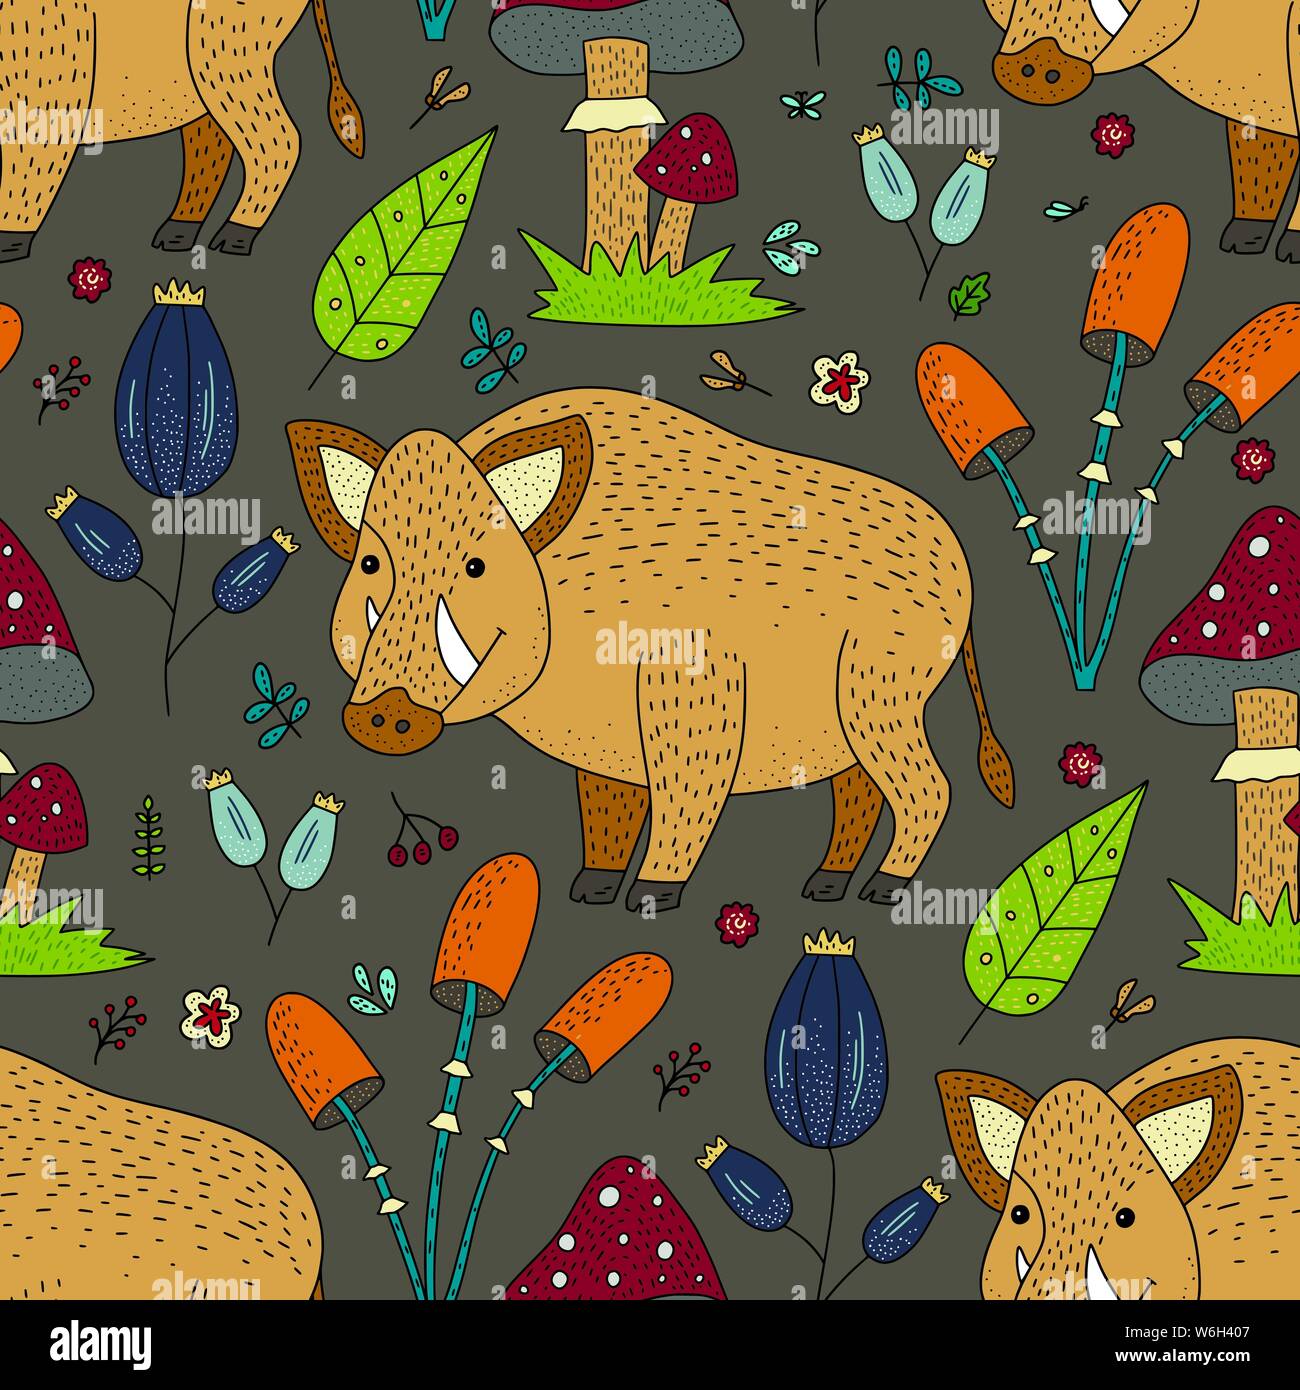 Die nahtlose Vektor Wald Muster mit niedlichen Abbildungen in Farbe - Wildschweine. Stock Vektor